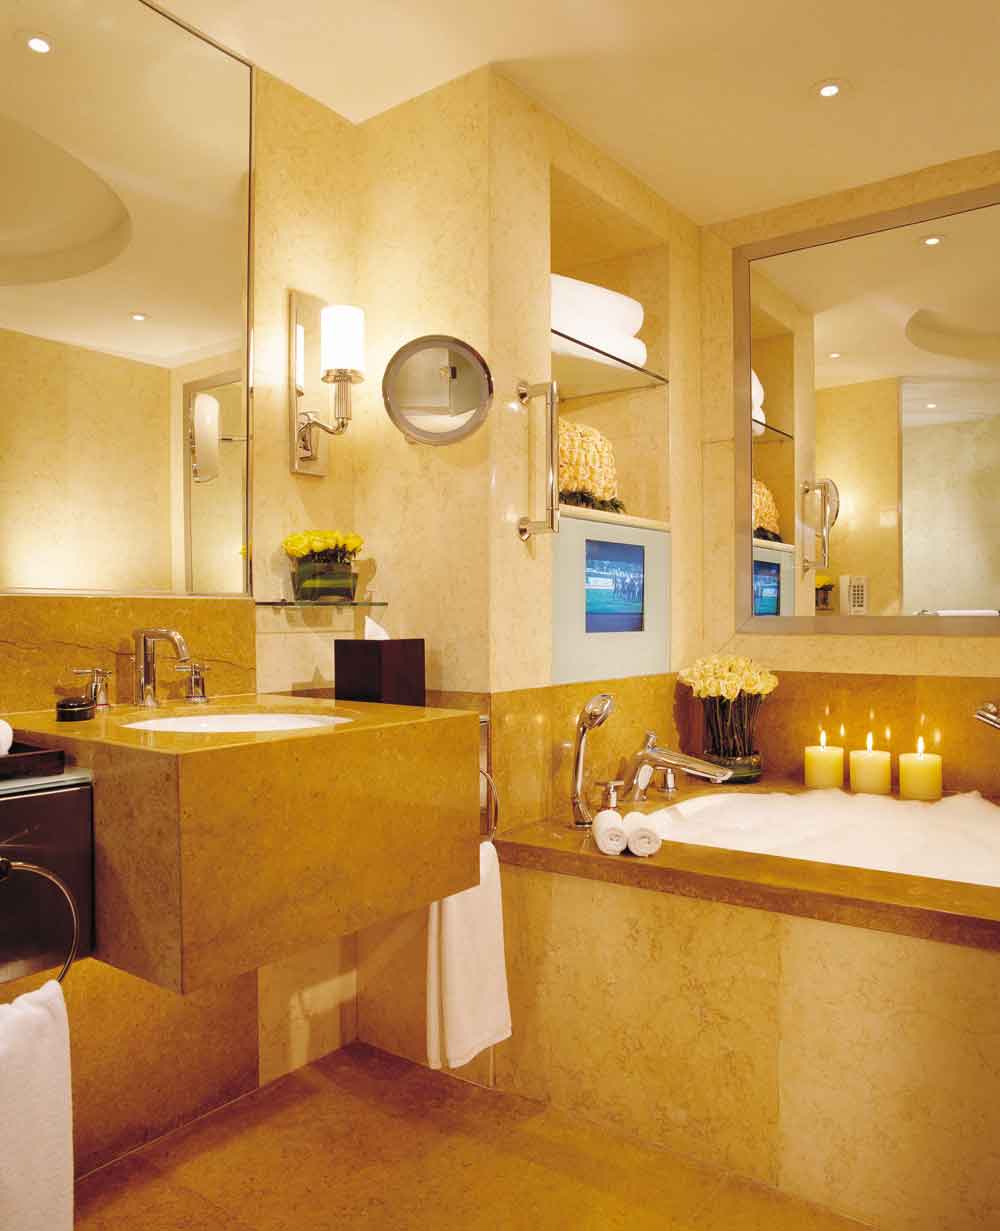 重庆精品酒店设计装修中把握质感获得顾客的好感呢